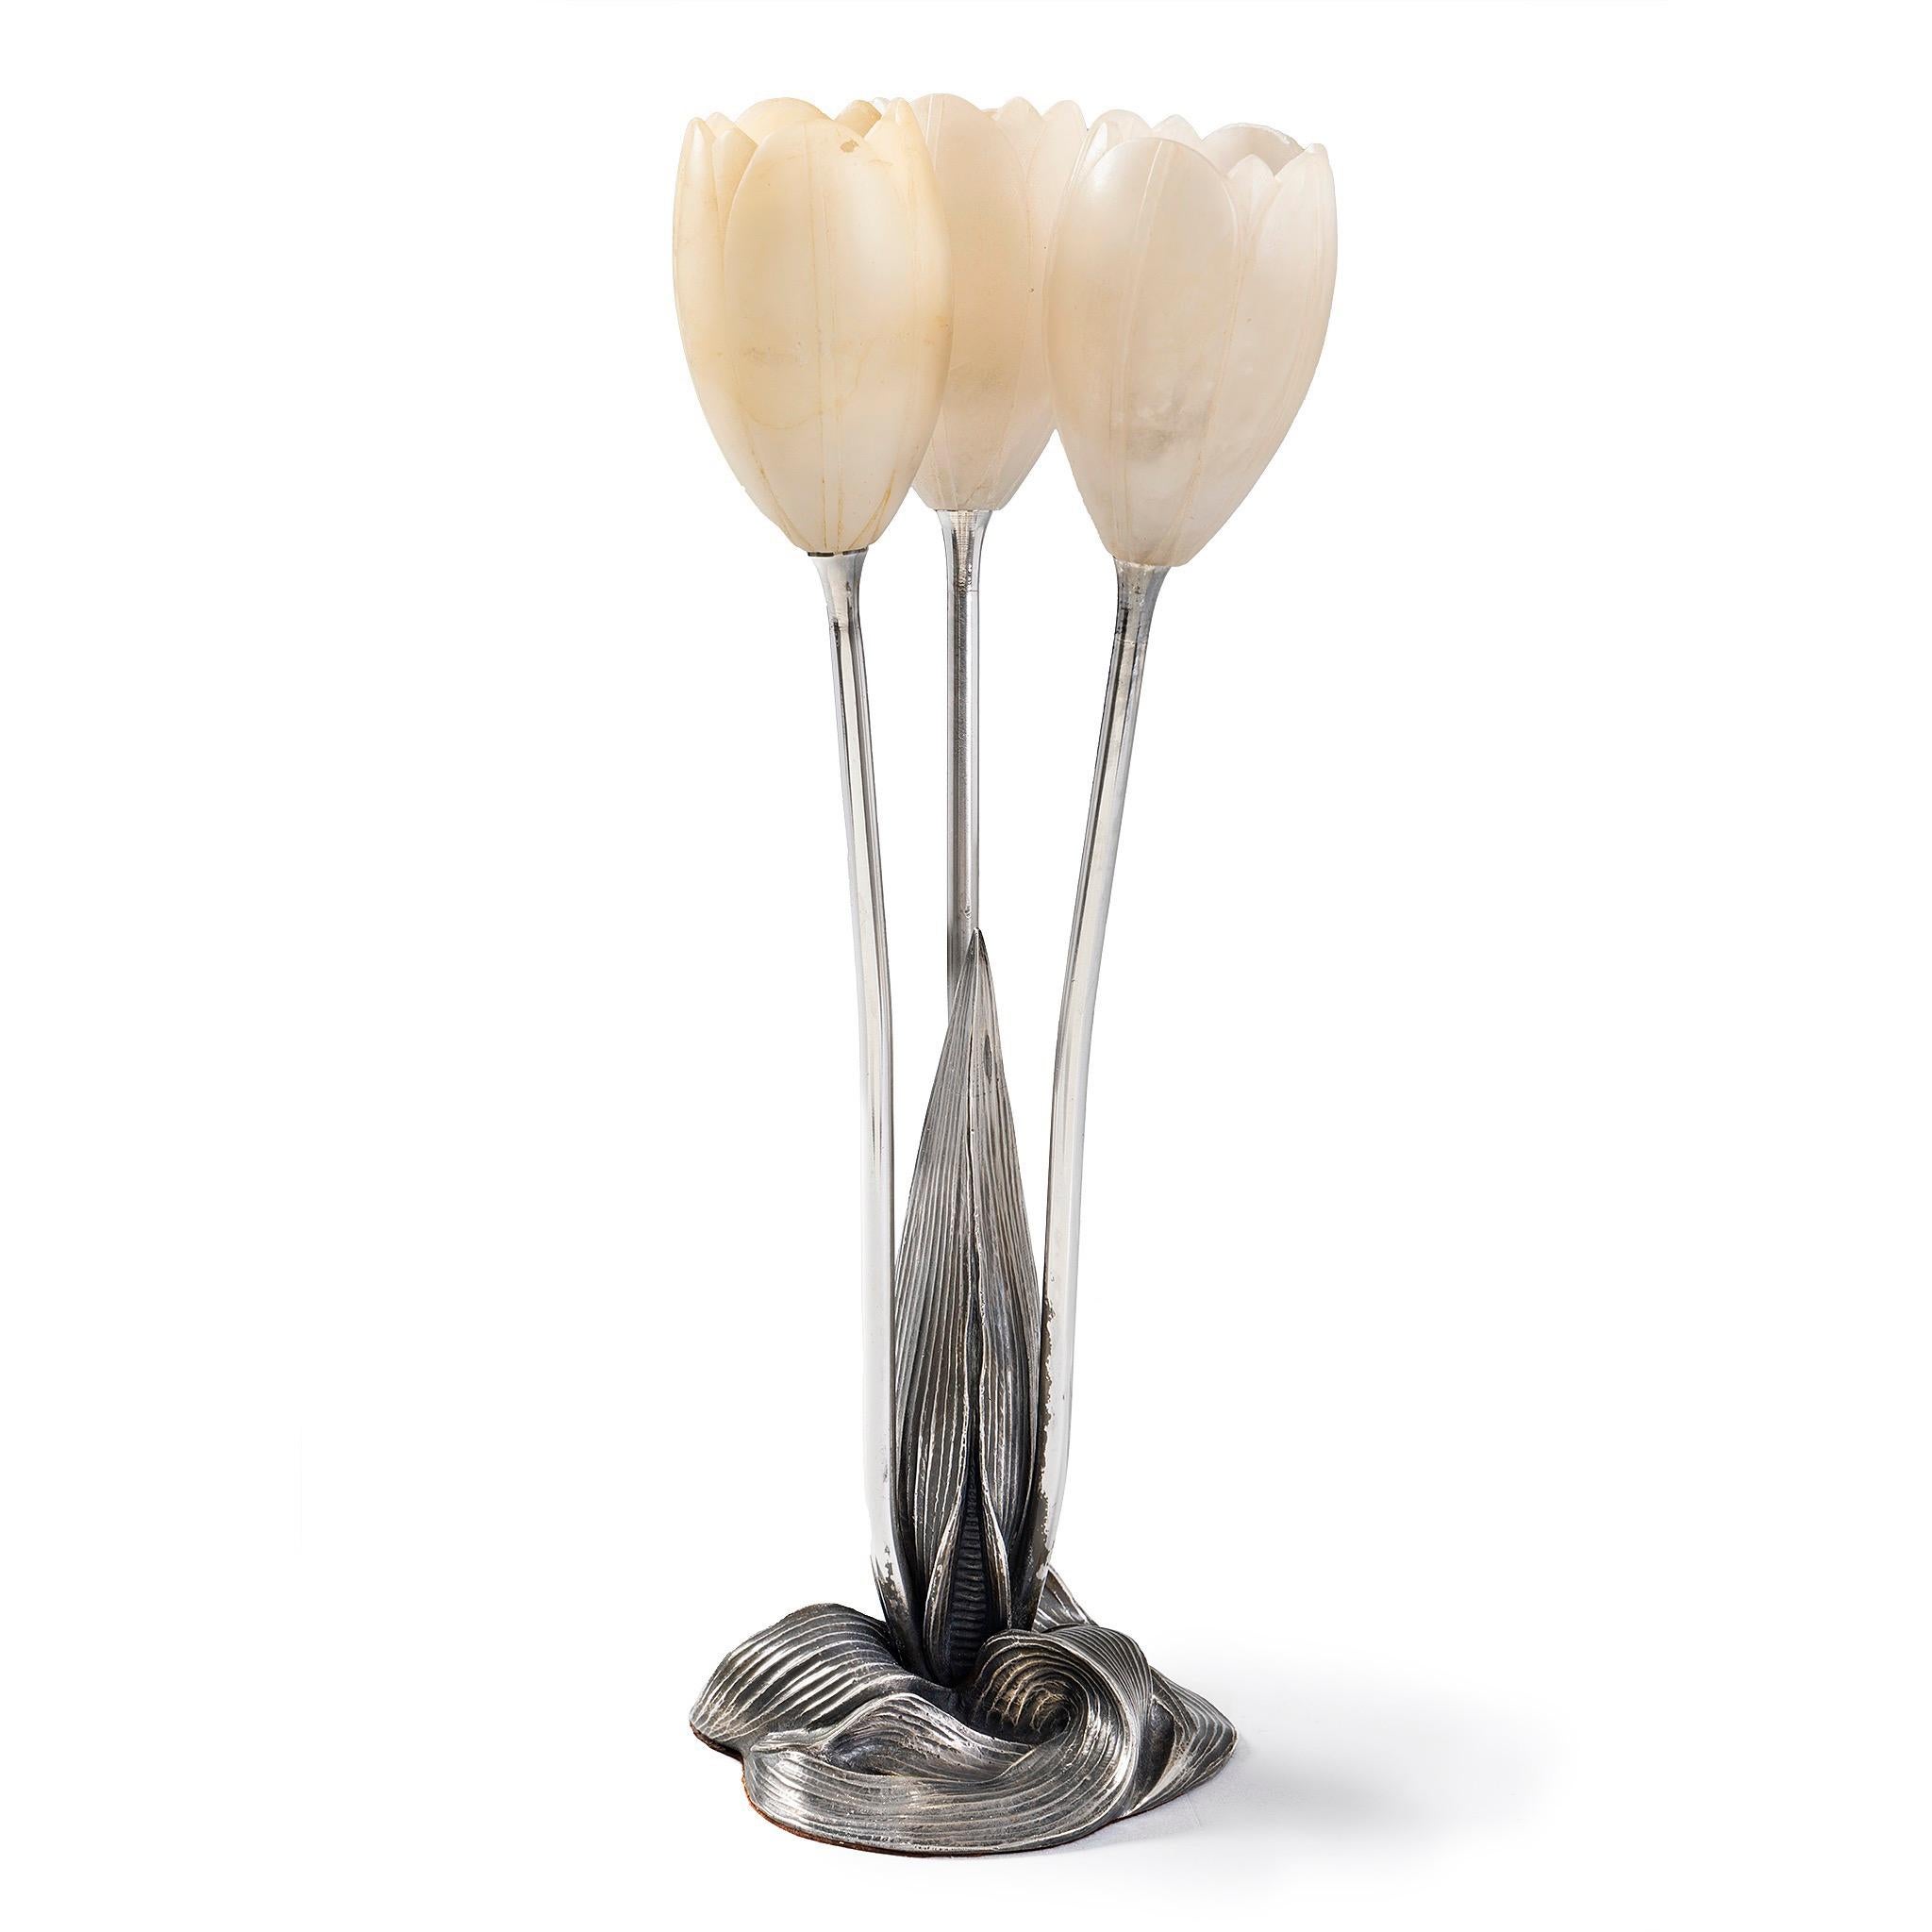 La structure innovante de la lampe d'Albert Whiting reflète une grappe de trois tulipes blanches émergeant d'un monticule de terre. Trio de fleurs de tulipes, dont les têtes de fleurs en albâtre sont minutieusement sculptées. L'utilisation de